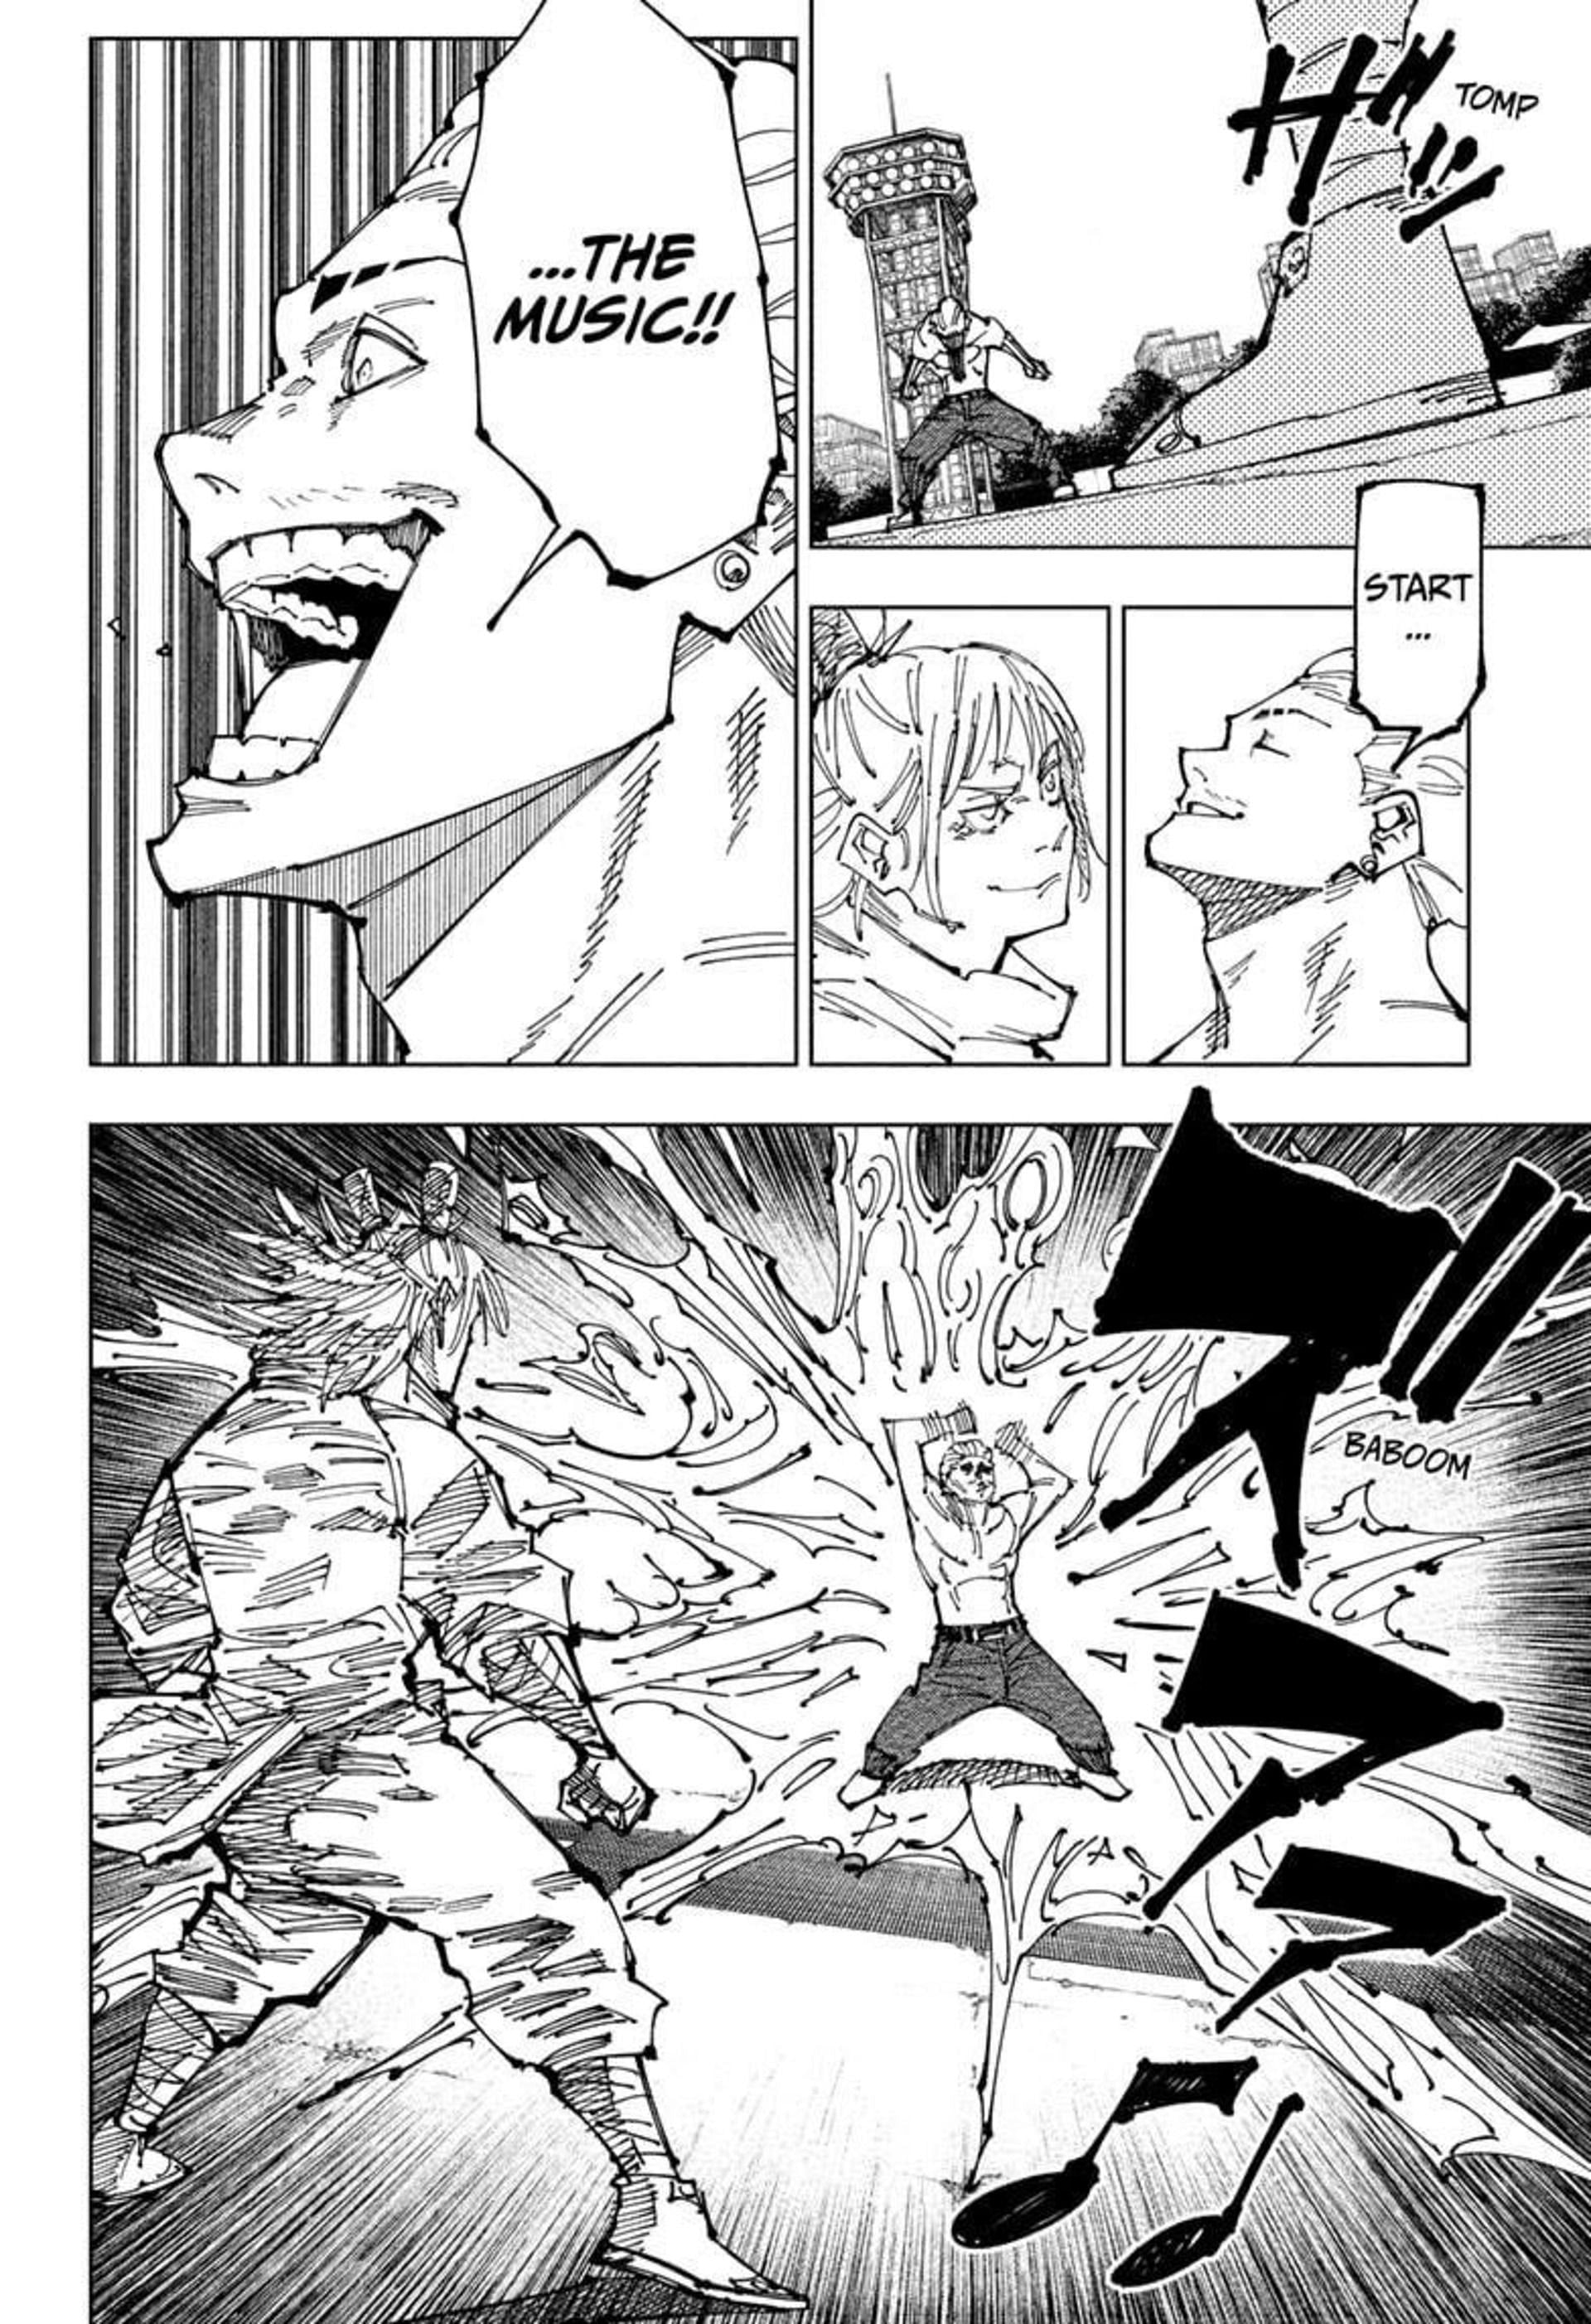 Kinji Hakari vs Hajime Kashimo in Jujutsu Kaisen (Image via Gege Akutami, Sheuisha)